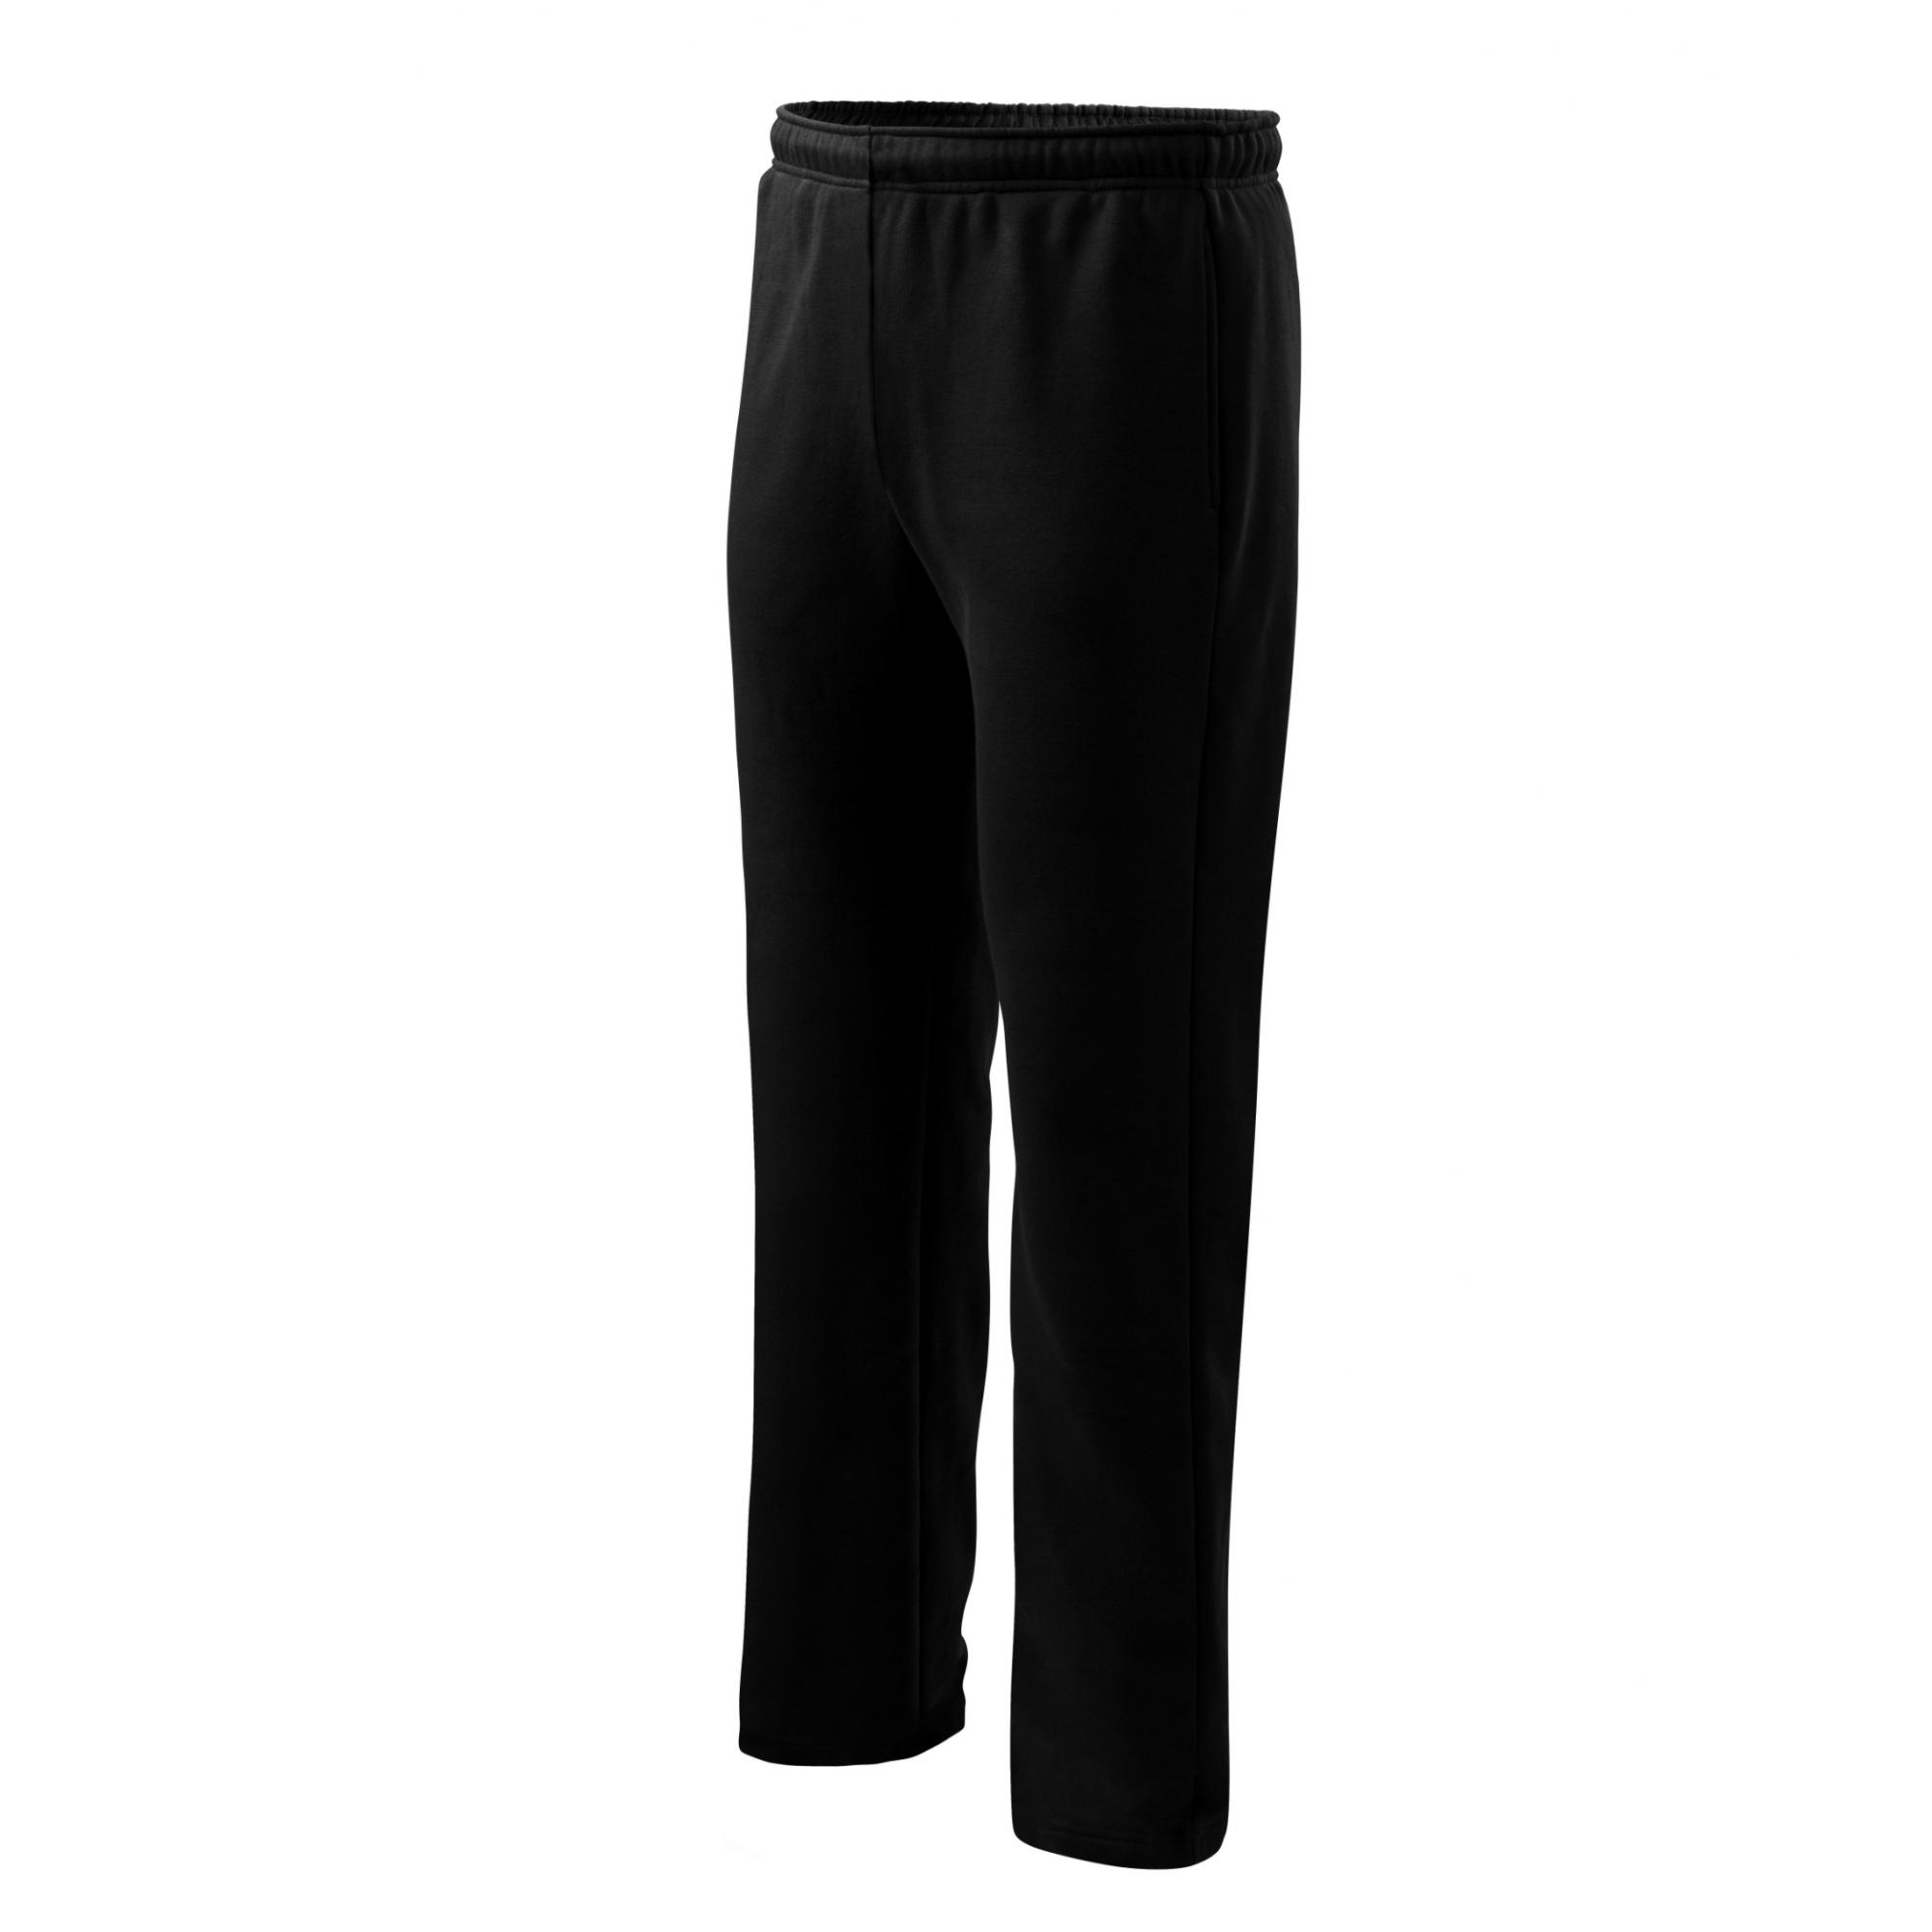 Pantaloni pentru bărbaţi/copii Comfort 607 Negru 12ani